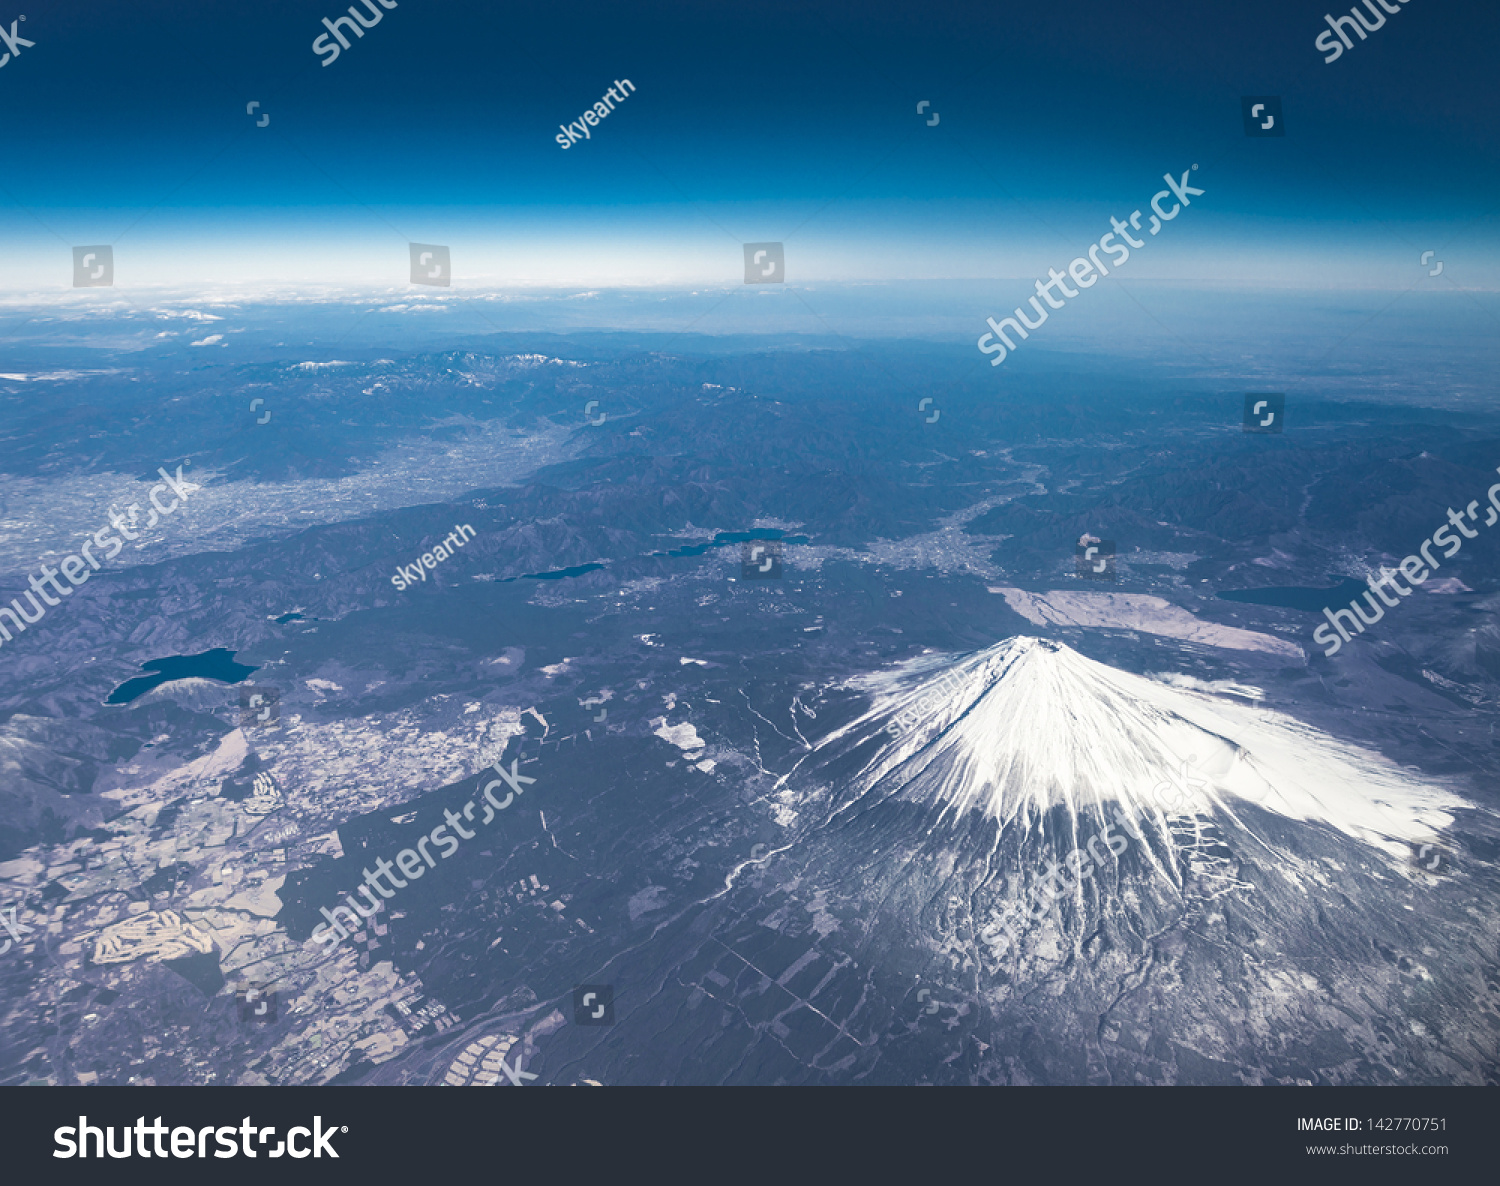 Mt Fuji Bird Eye View Stock Photo 142770751 : Shutterstock